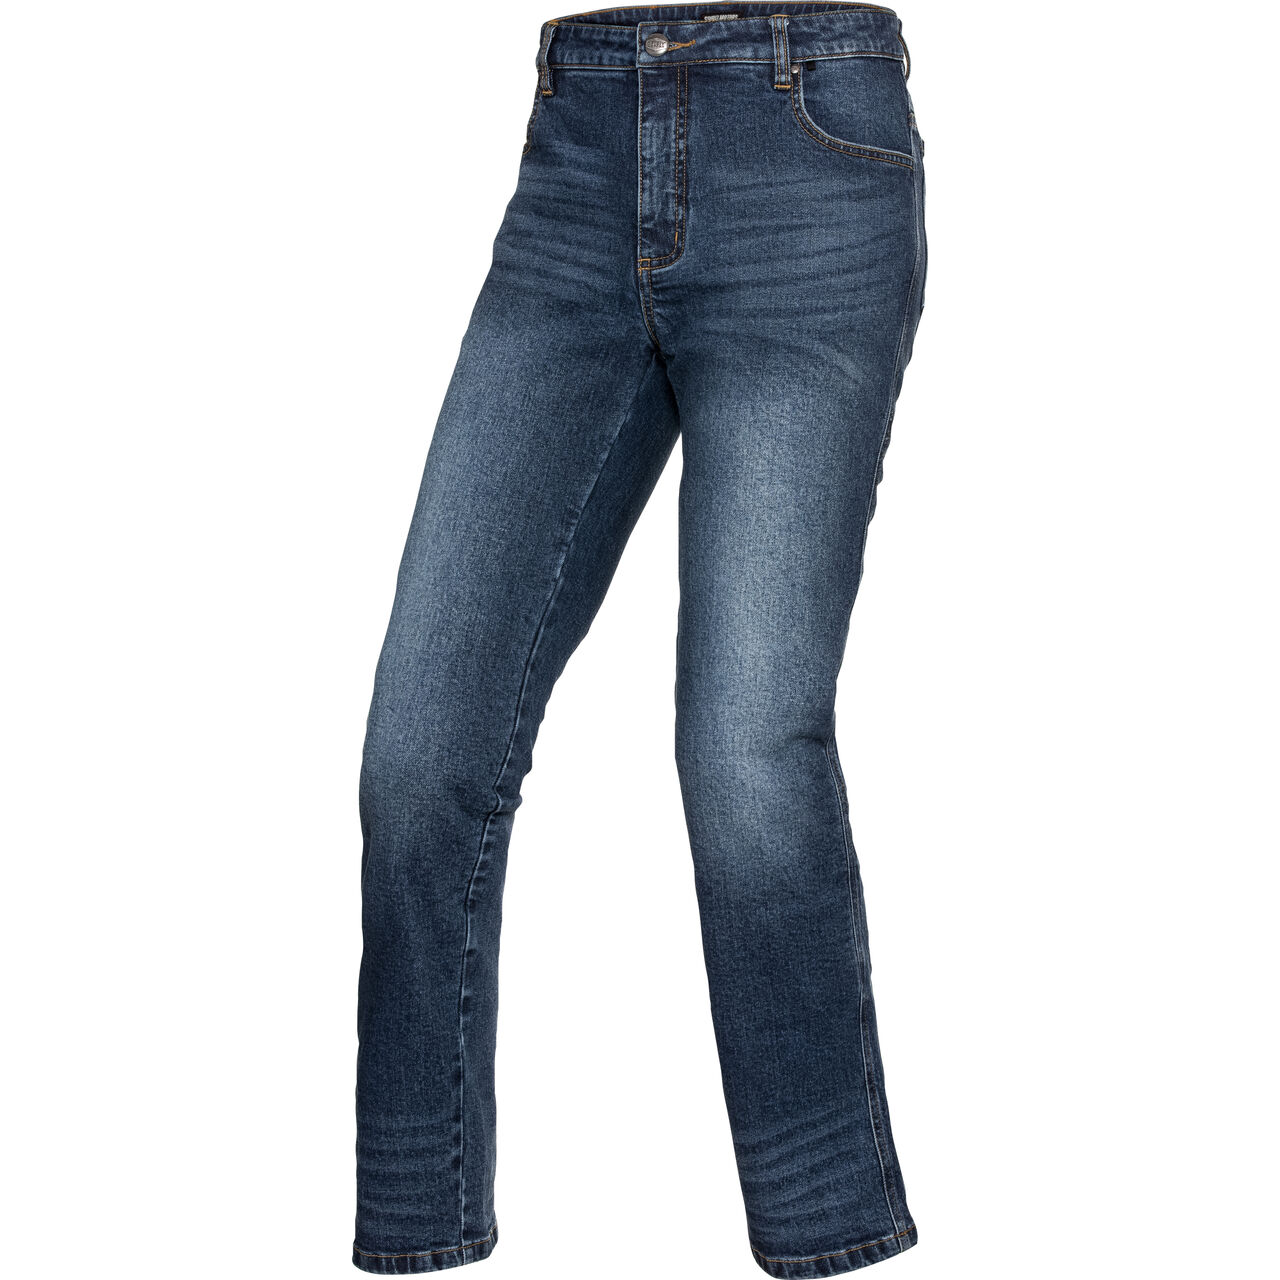 HPPE / cotton jeans 2.0 light blue